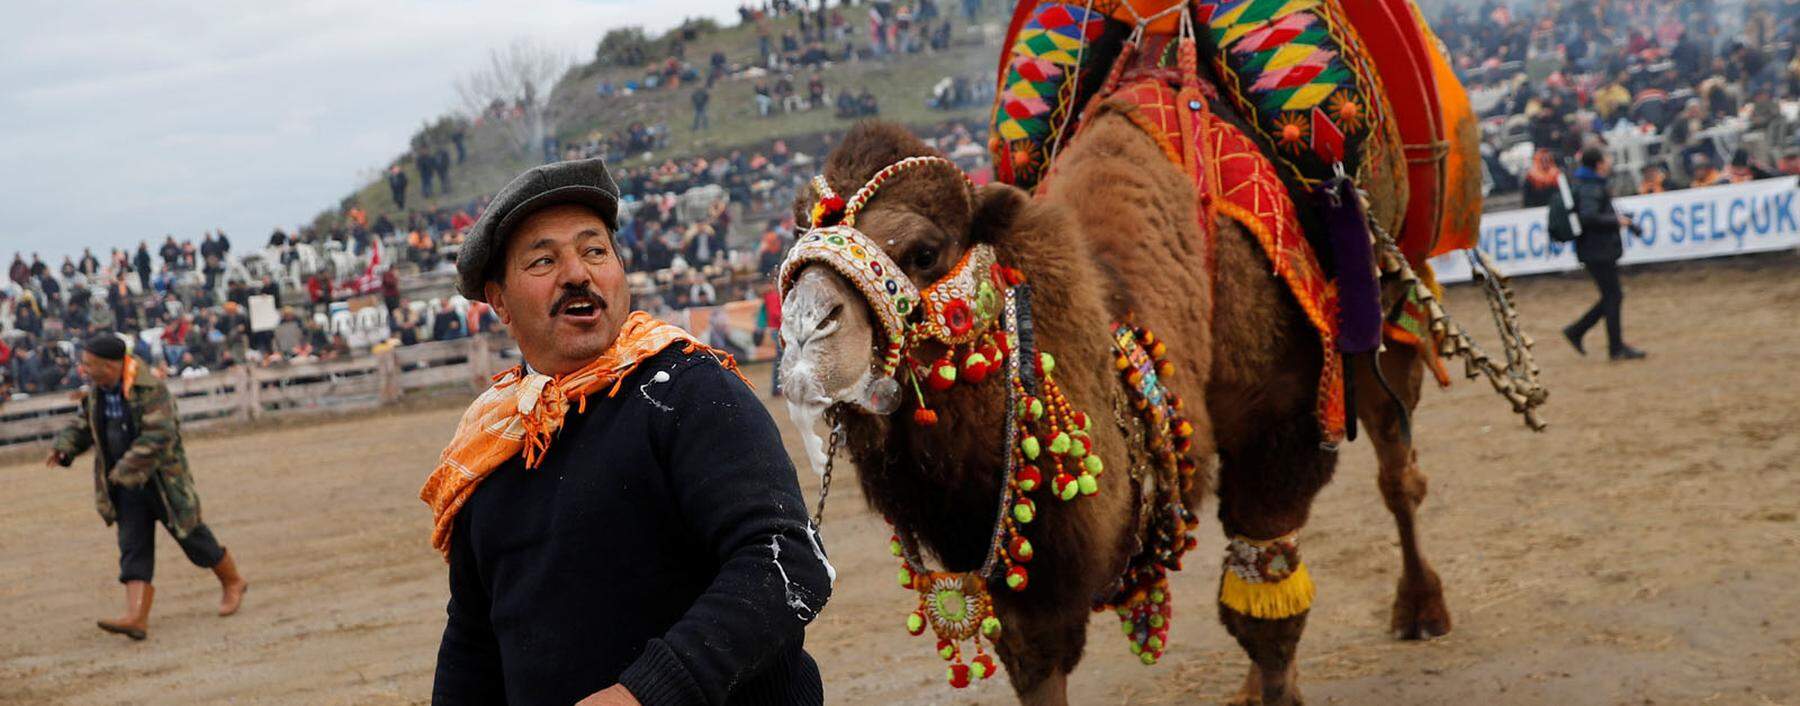 Aufgeladene, ausgelassene Stimmung im türkischen Selçuk: Beim Kamelkampf treten immer zwei Kamele gegeneinander an. Nach der traditionellen Rangelei wird gefeiert. 